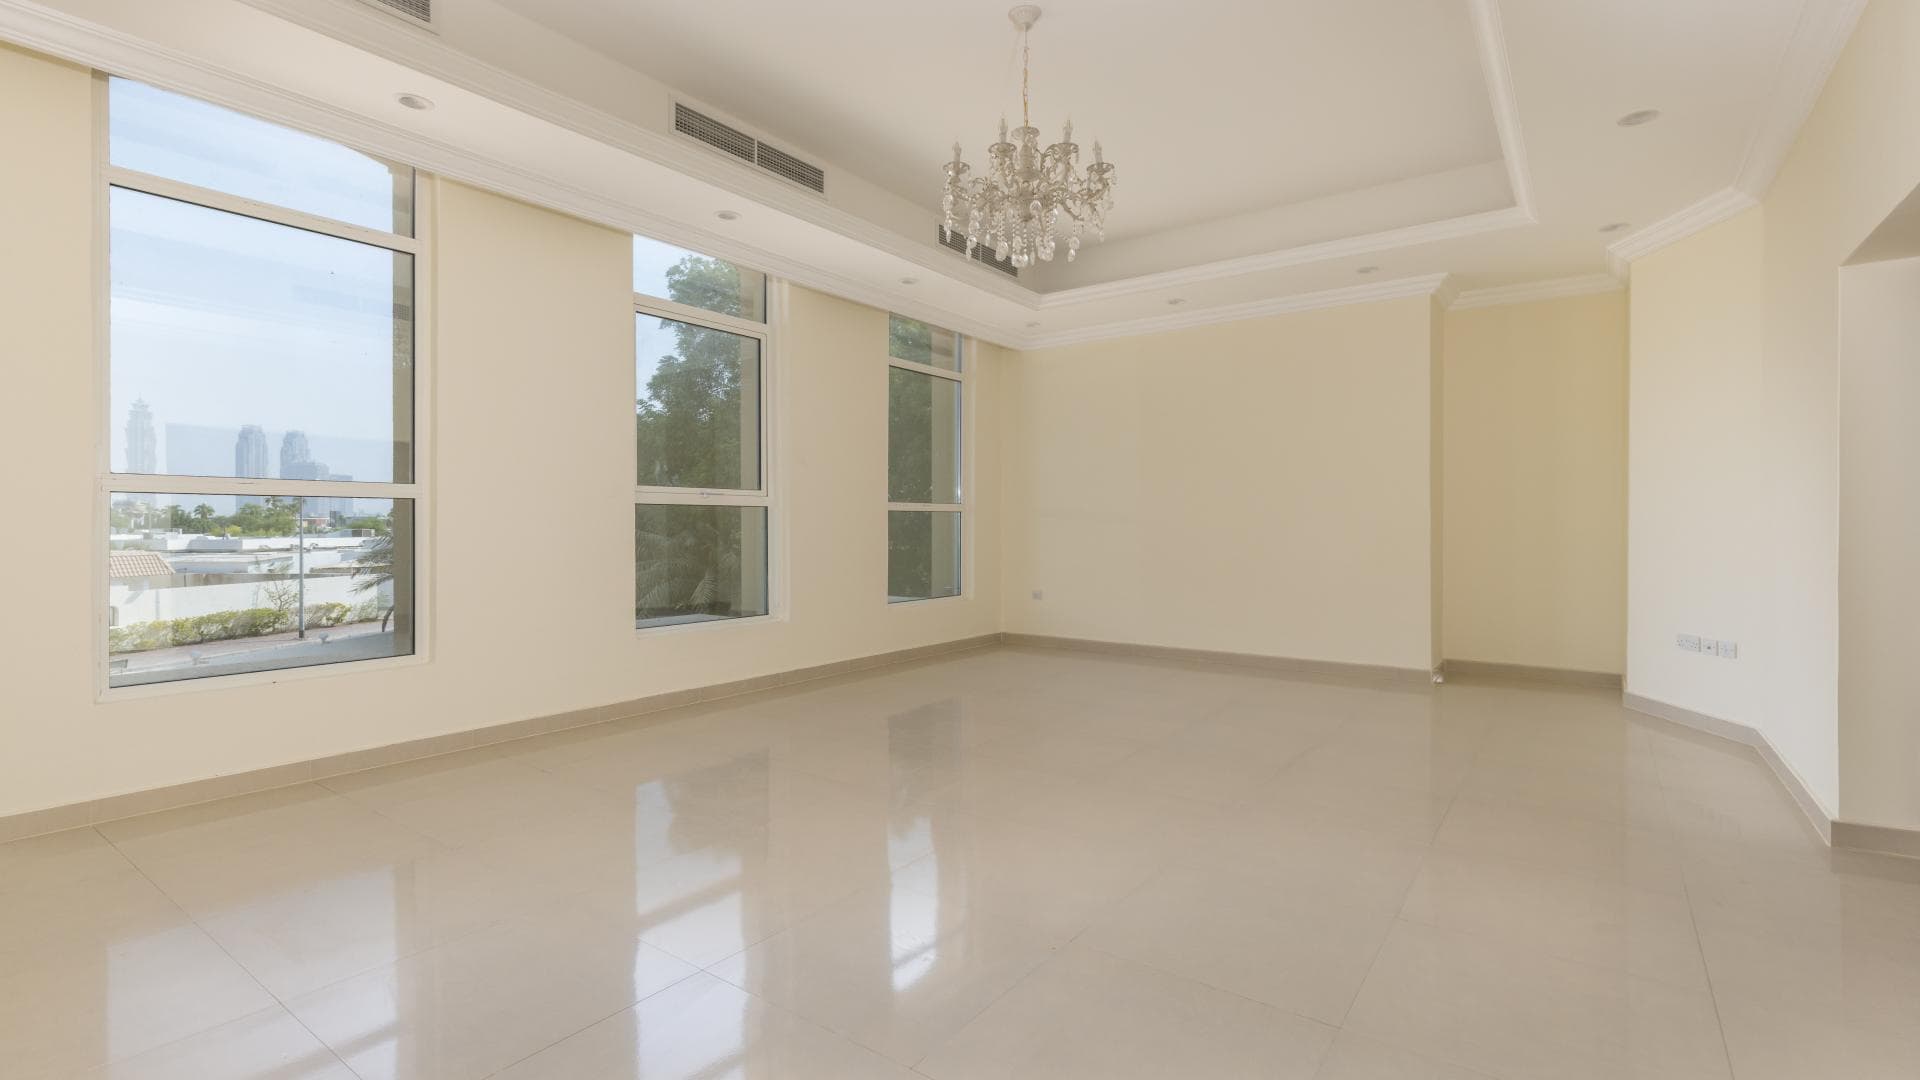 10 Bedroom Villa For Rent Jumeirah 2 Lp14748 255f17026d91b000.jpg